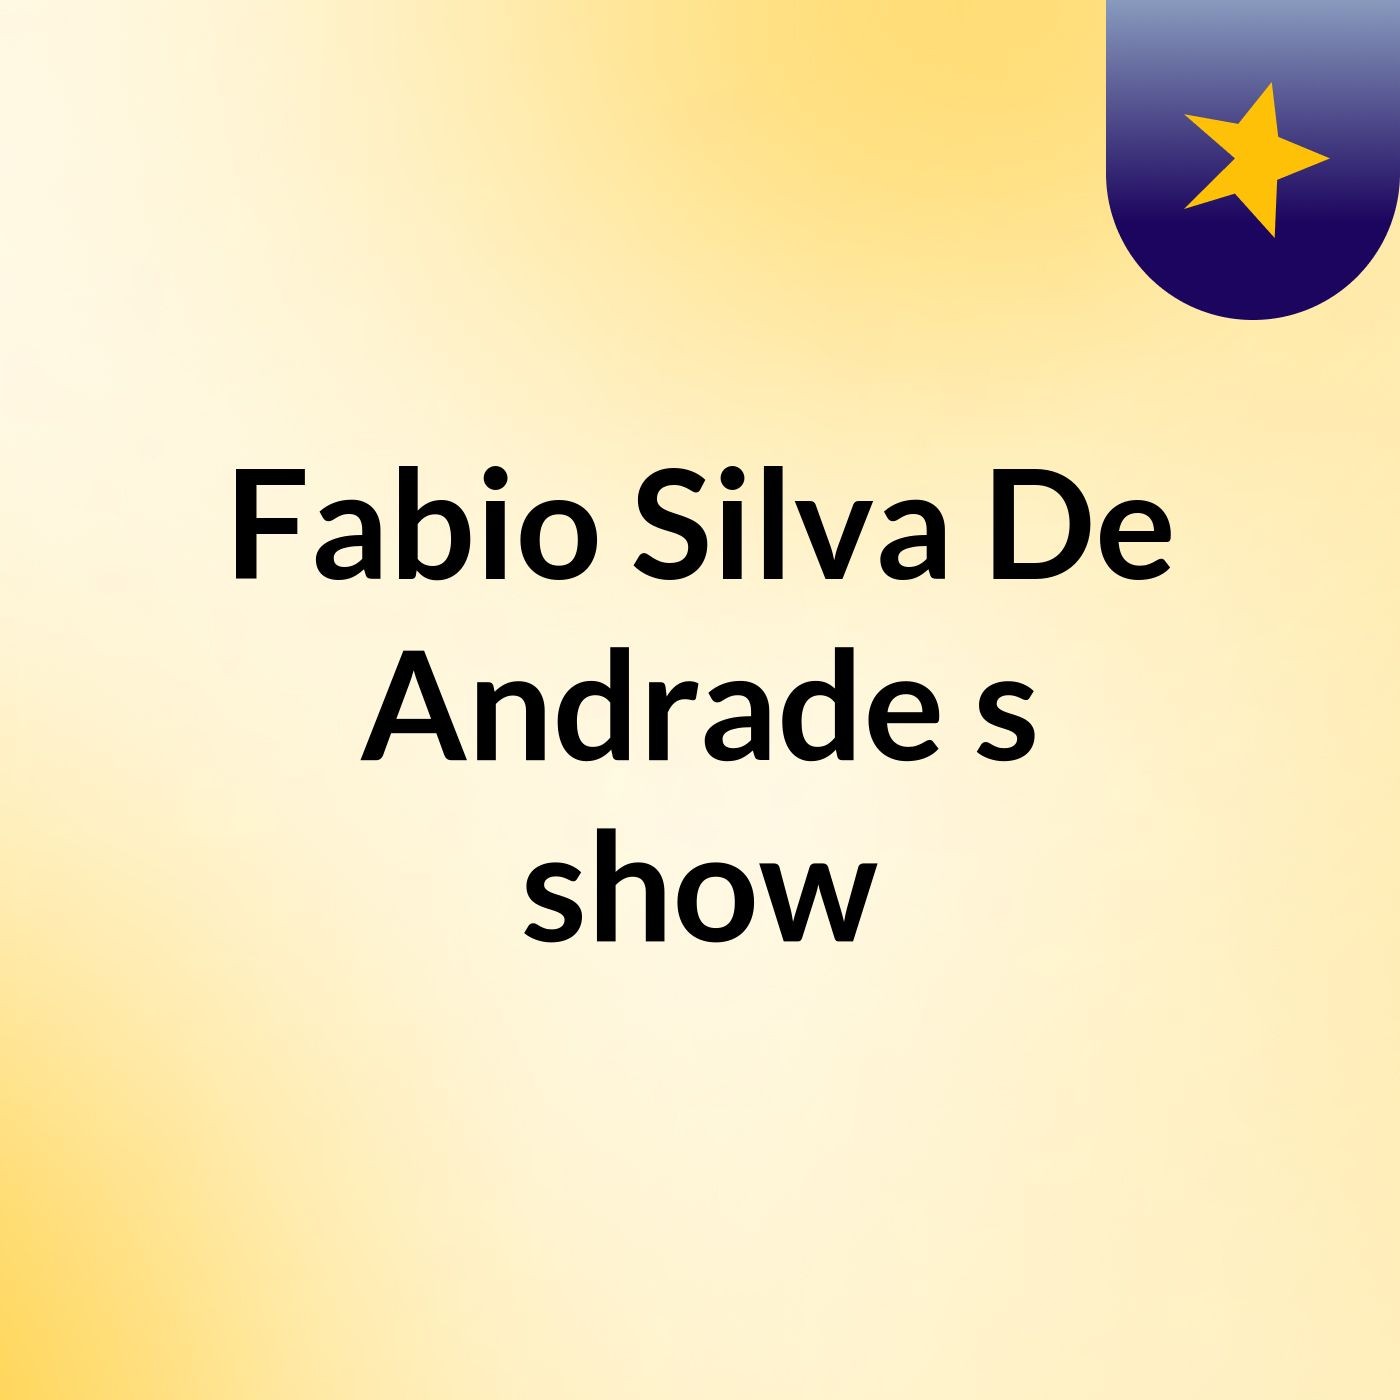 Fabio Silva De Andrade's show